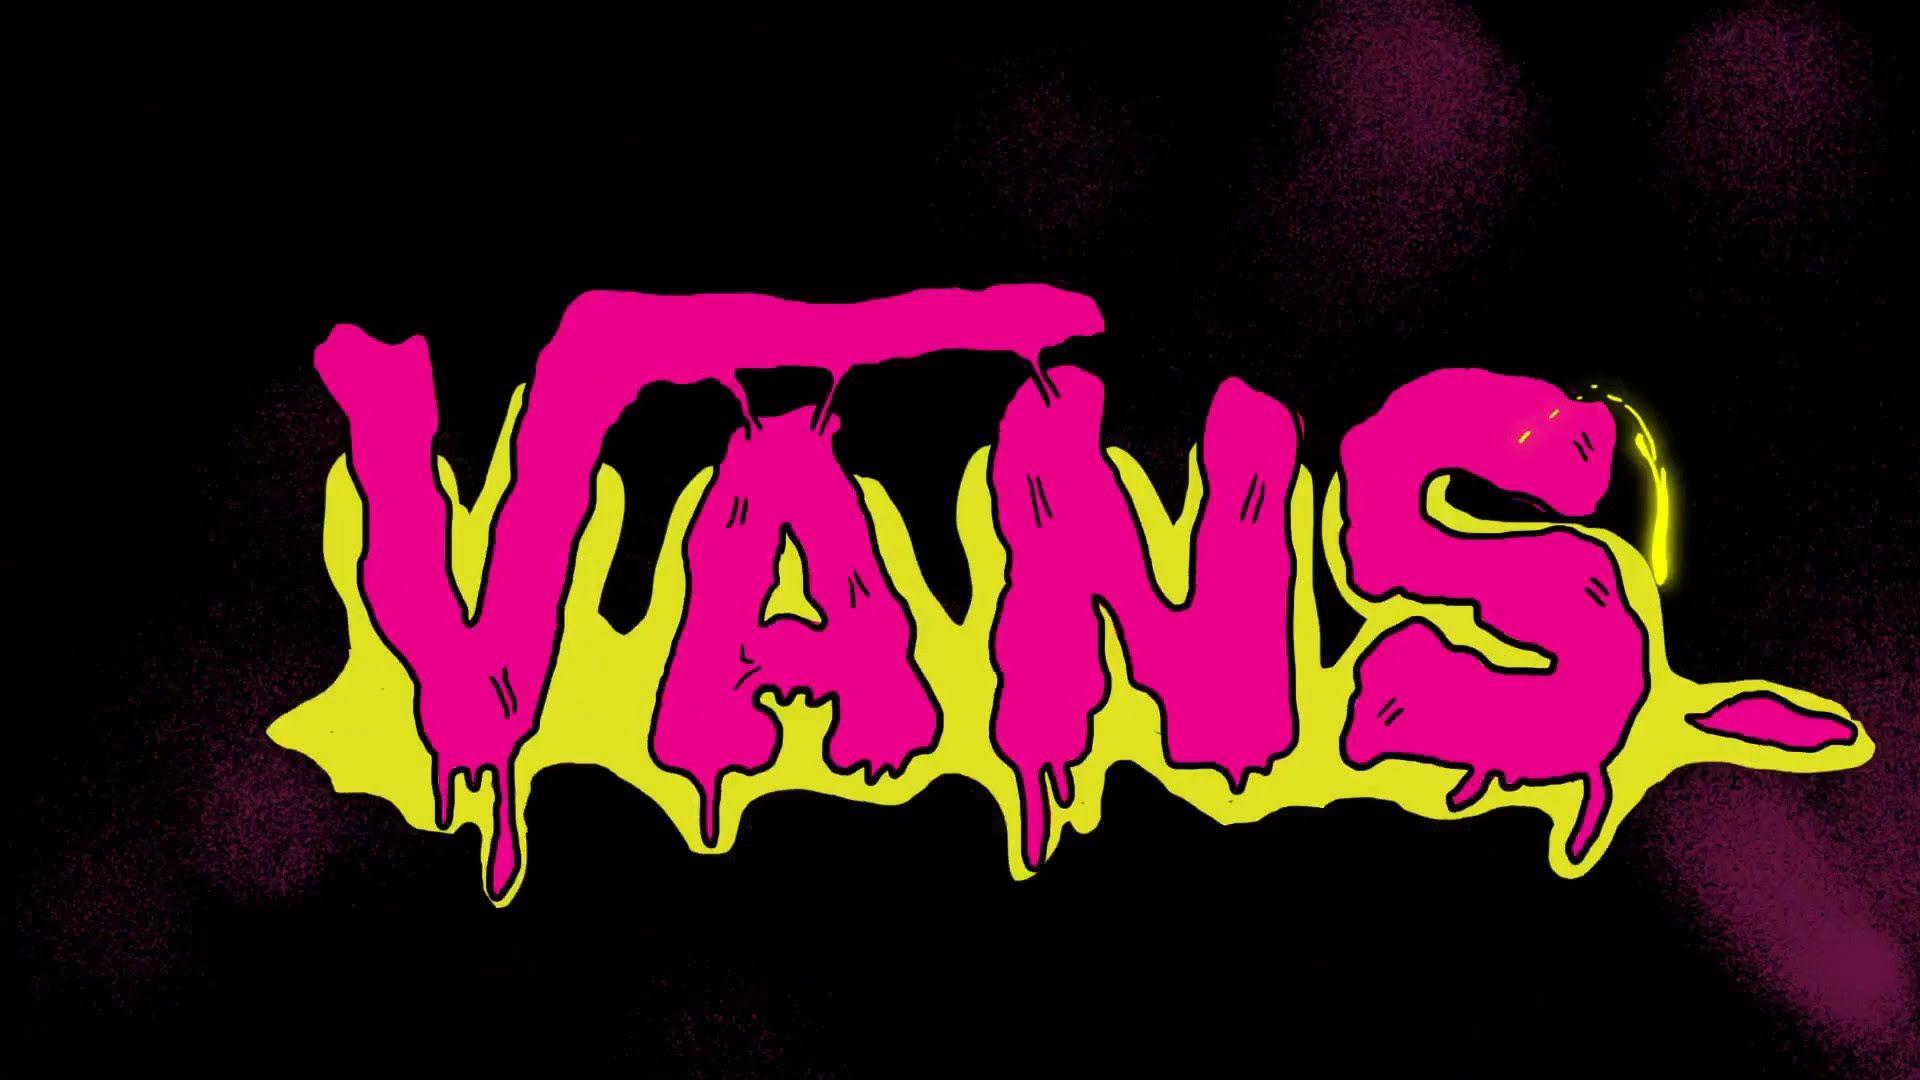 Pink Vans Logo - Vans Logo Wallpapers HD. | Vans | Vans logo, Vans, Wallpaper